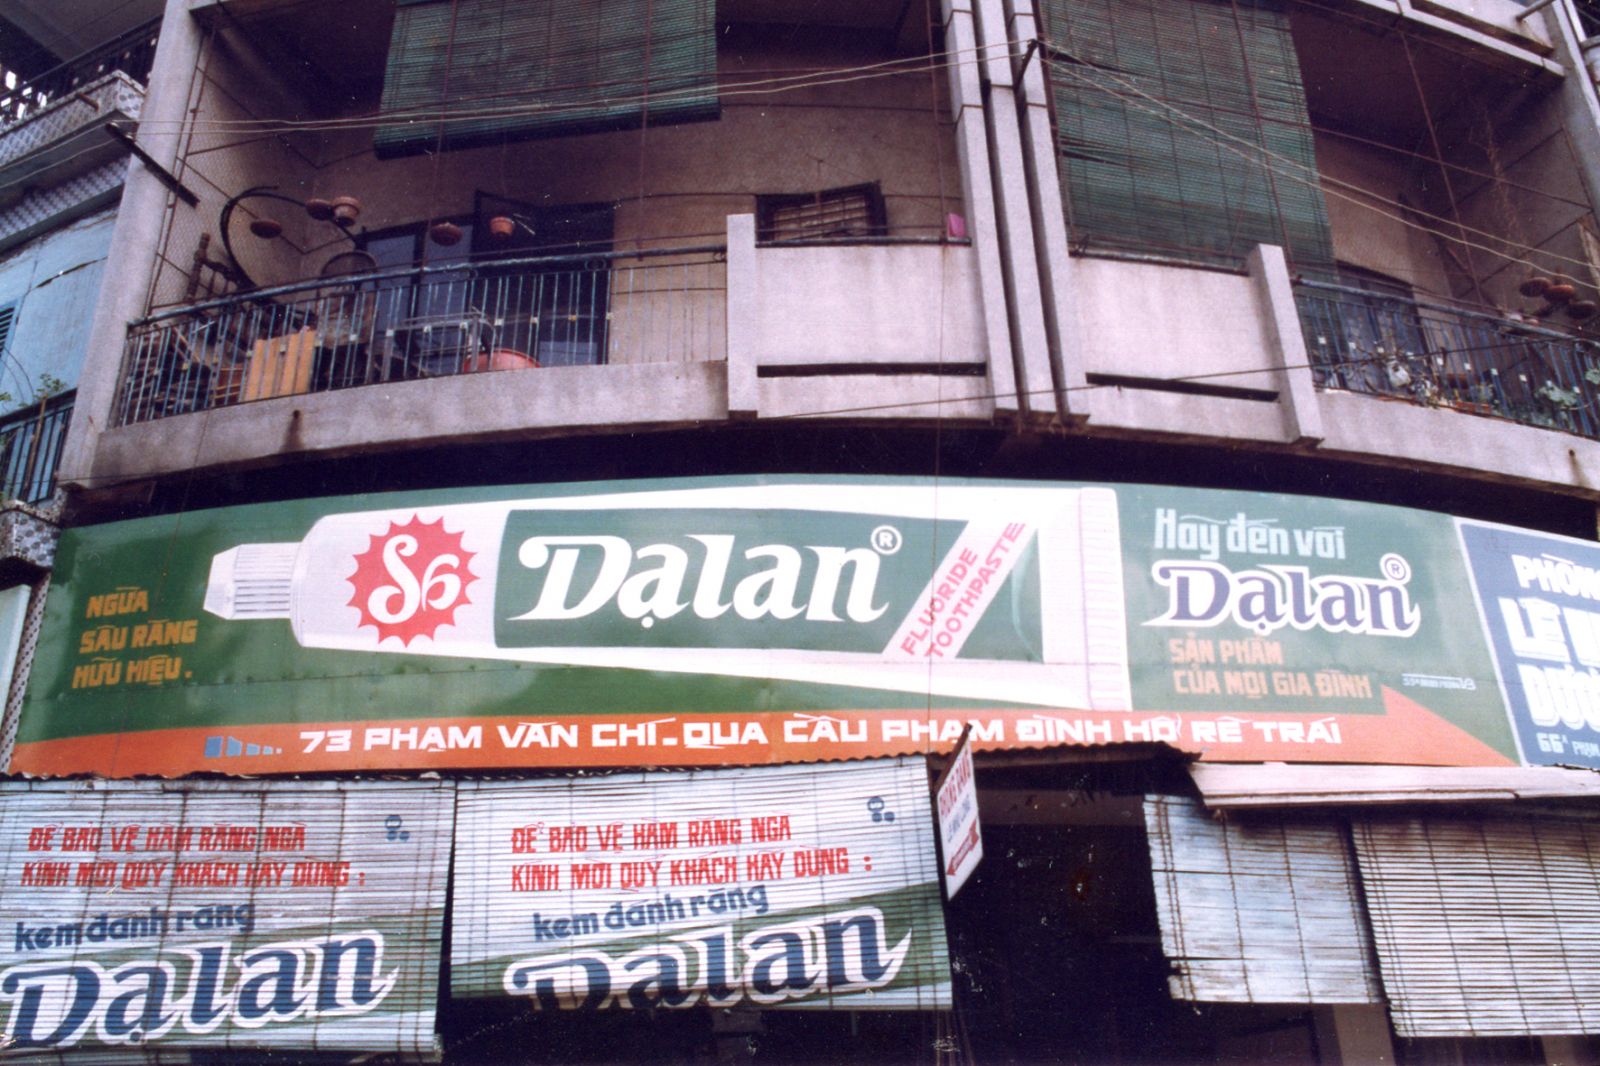 Đầu năm 1994, Dạ Lan chiếm khoảng 70% thị phần.